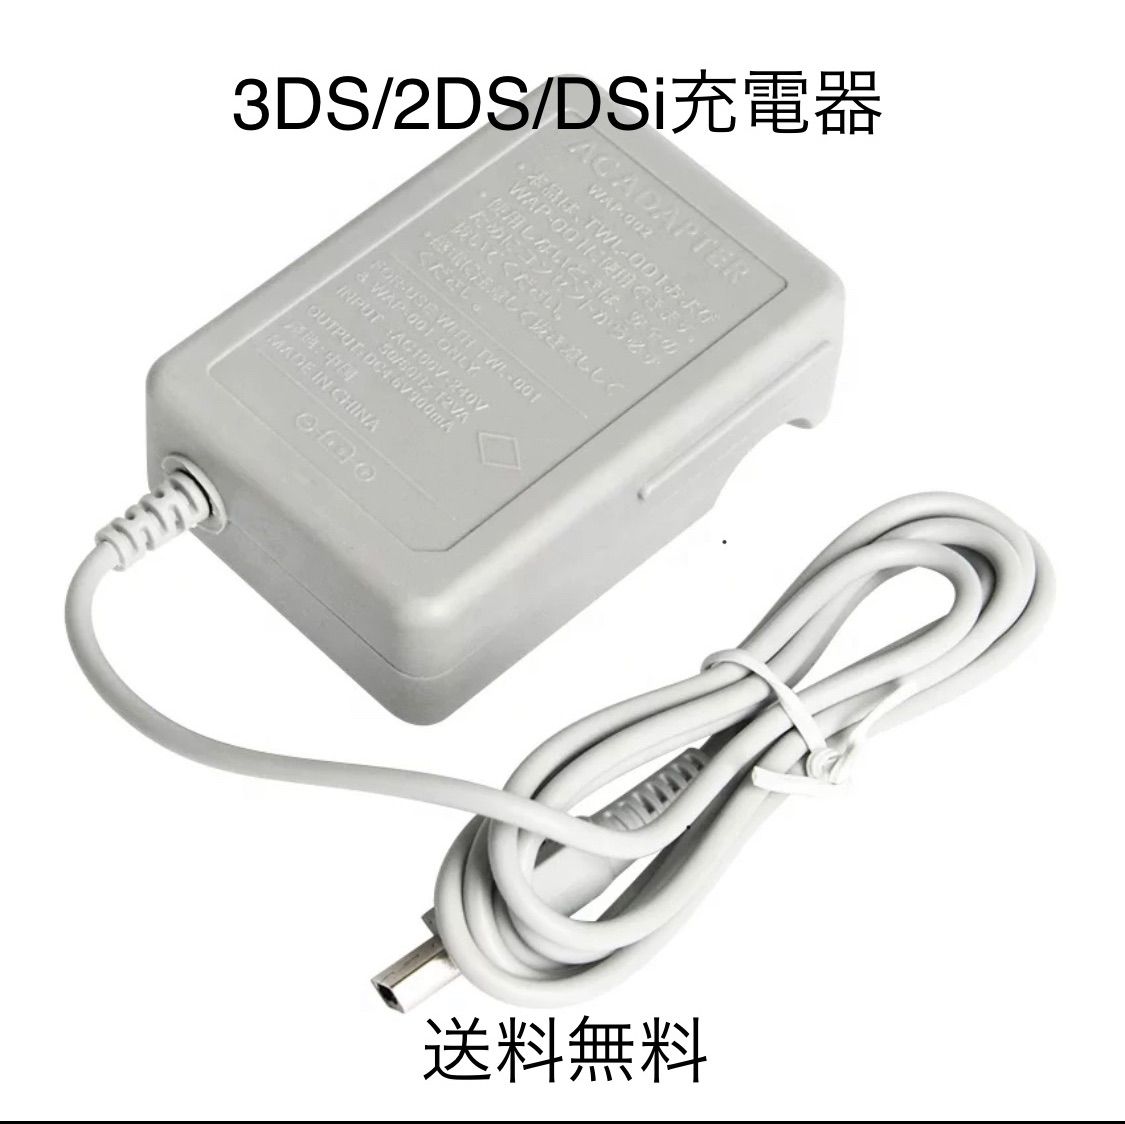 ニンテンドー3DS 充電器(ACアダプター) - アソビバメルカリ店 〜良い ...